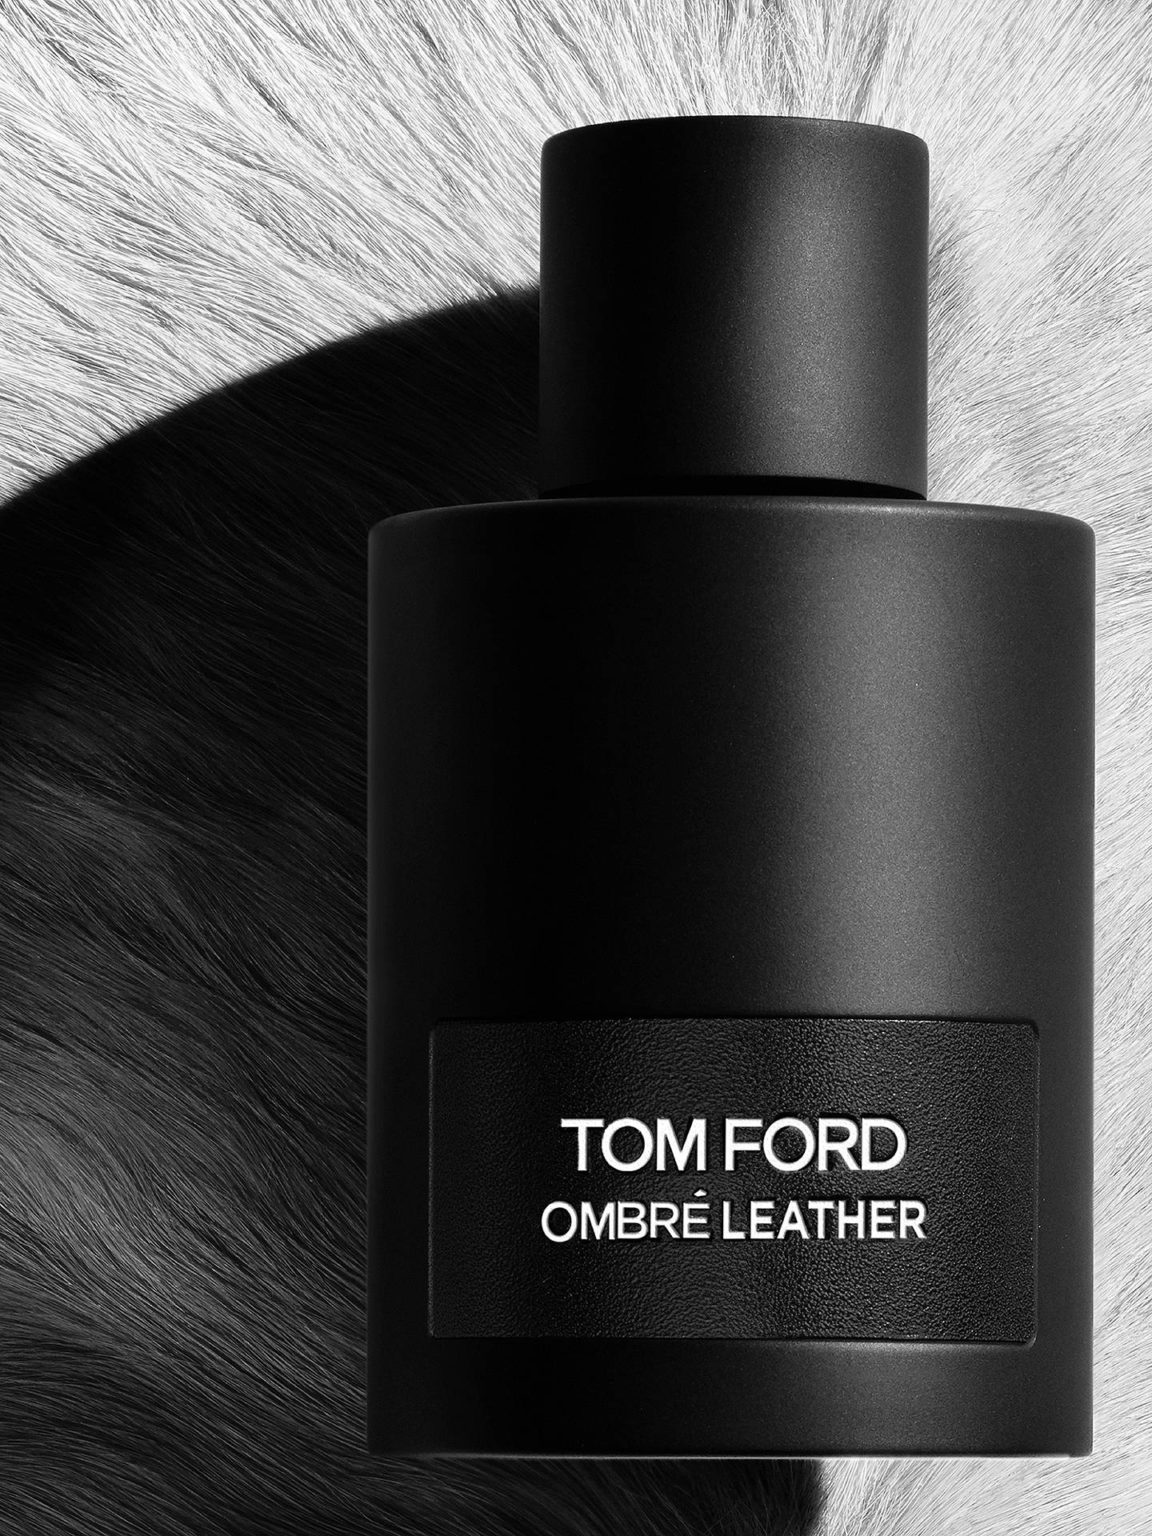 TOM FORD Ombré Leather Inspiration/Alternative Extrait De Parfum 50ml